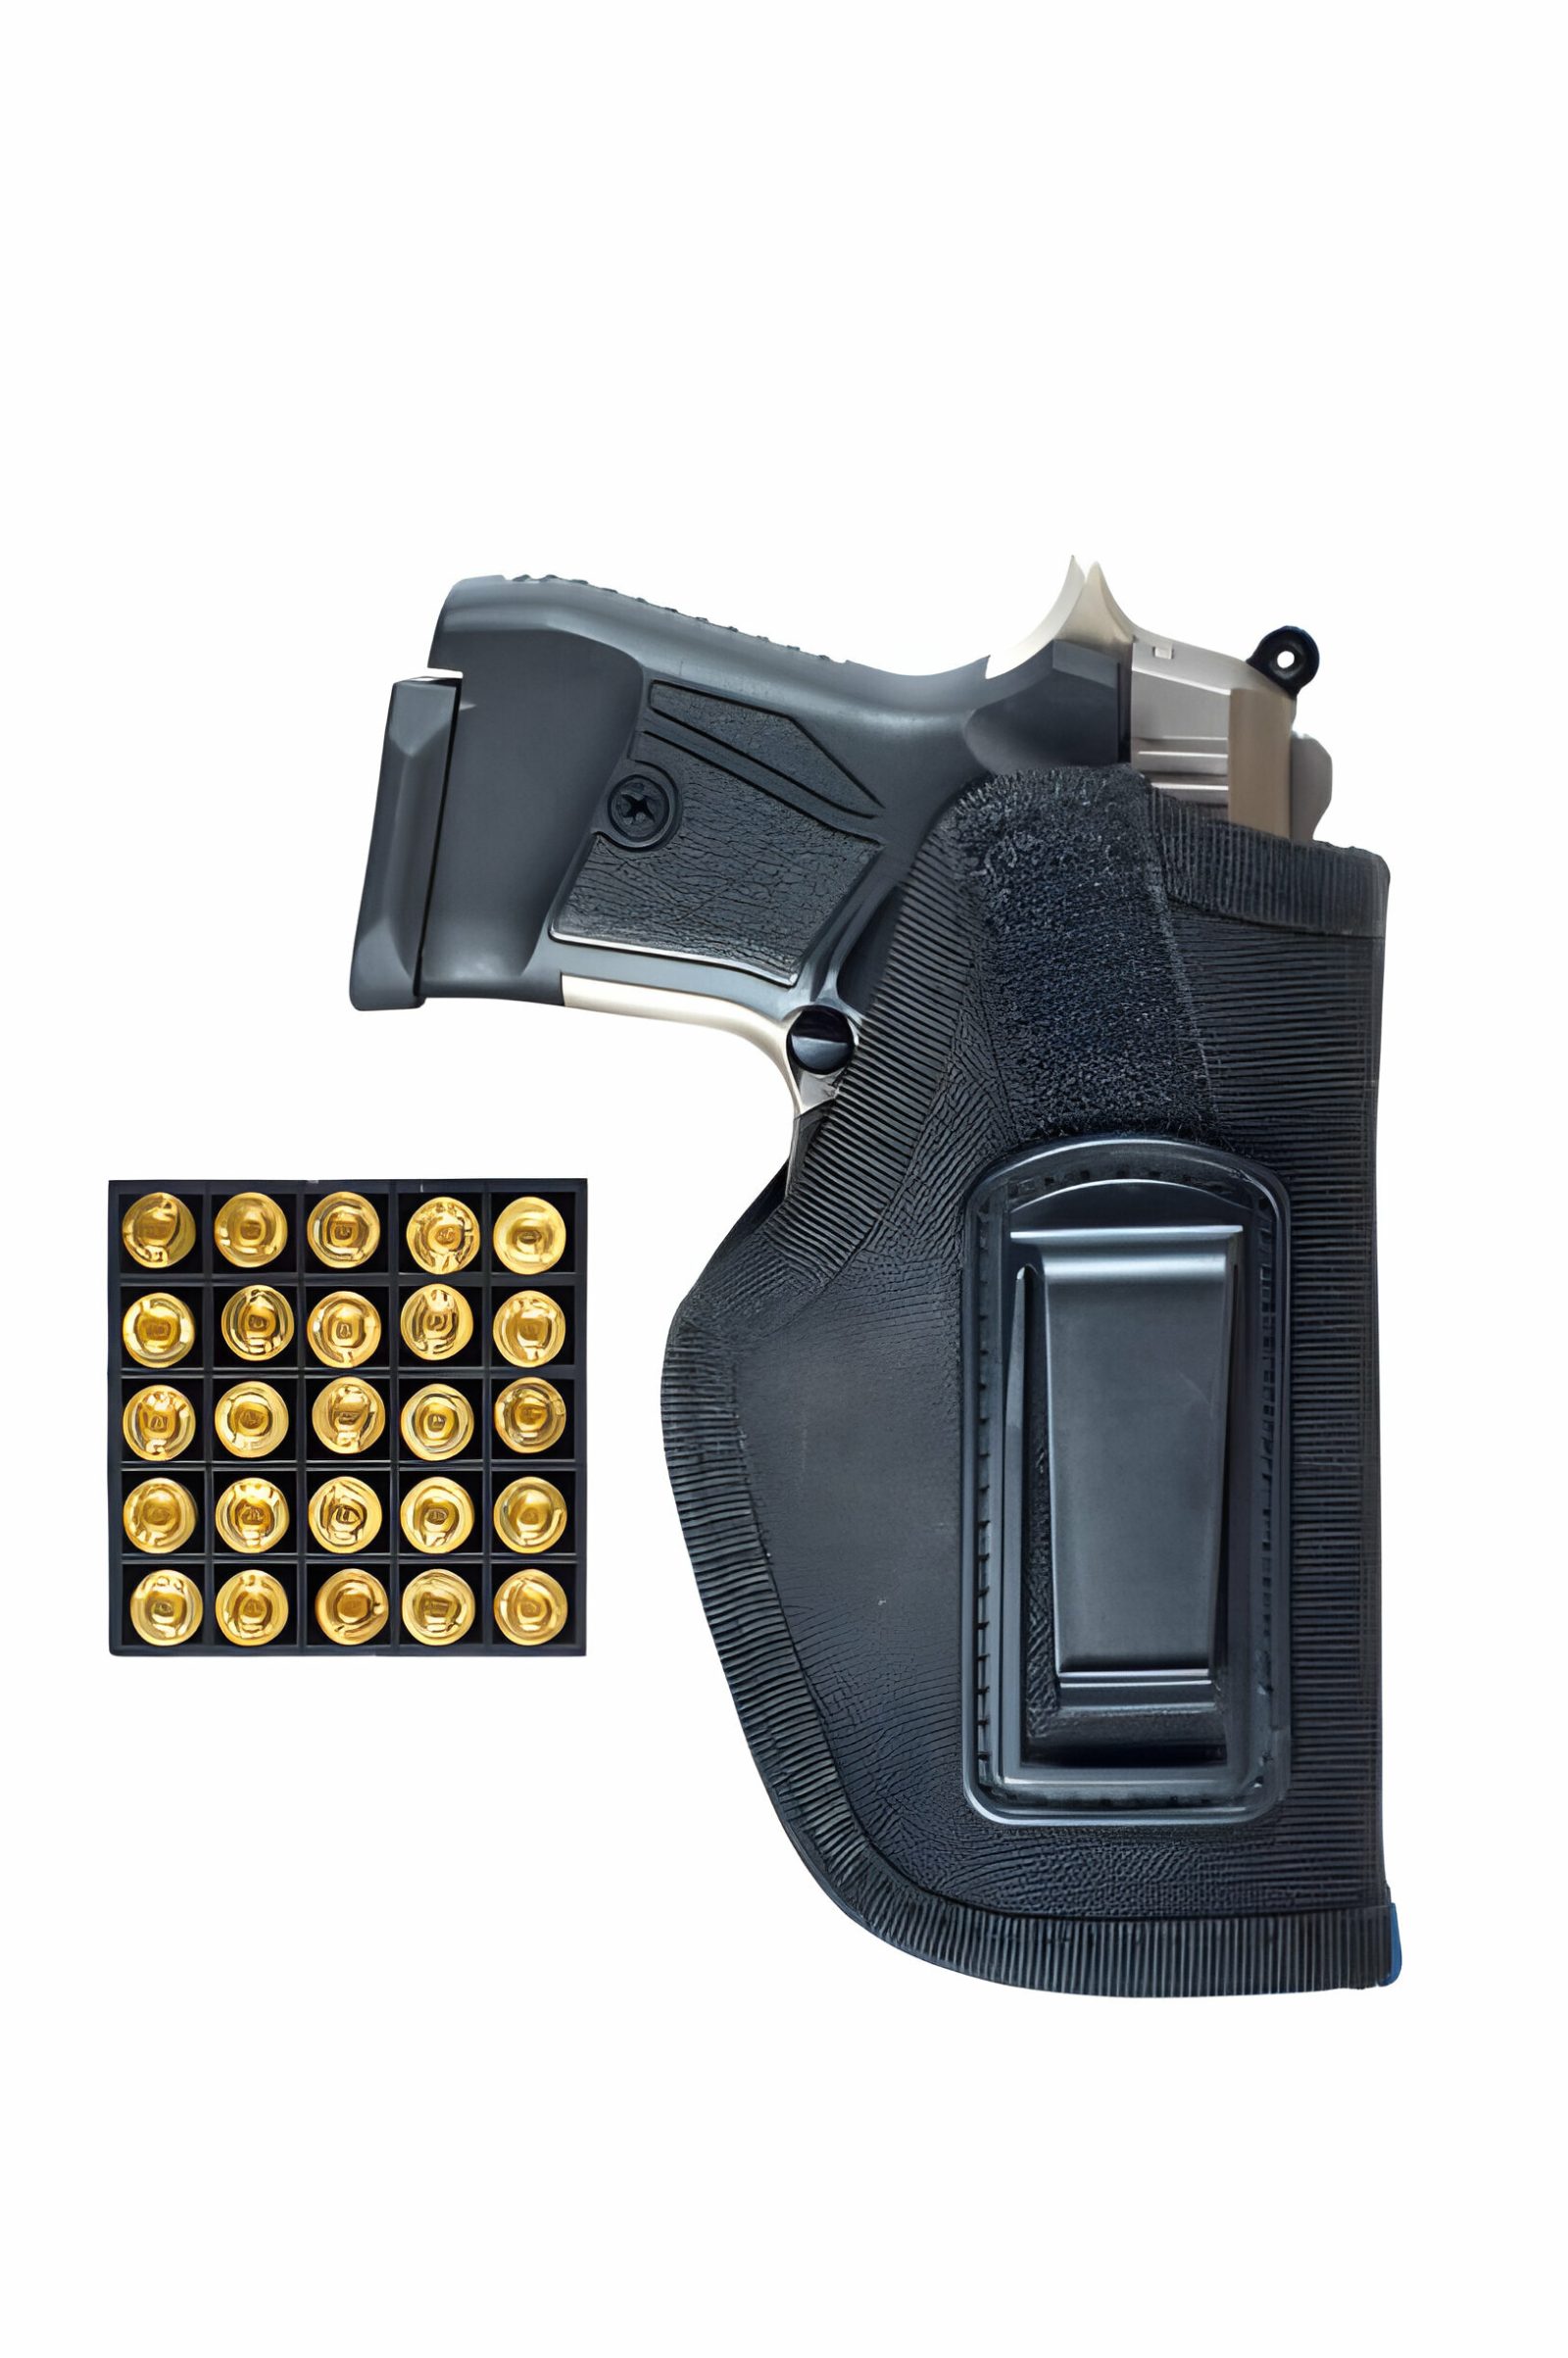 holster for gun with light